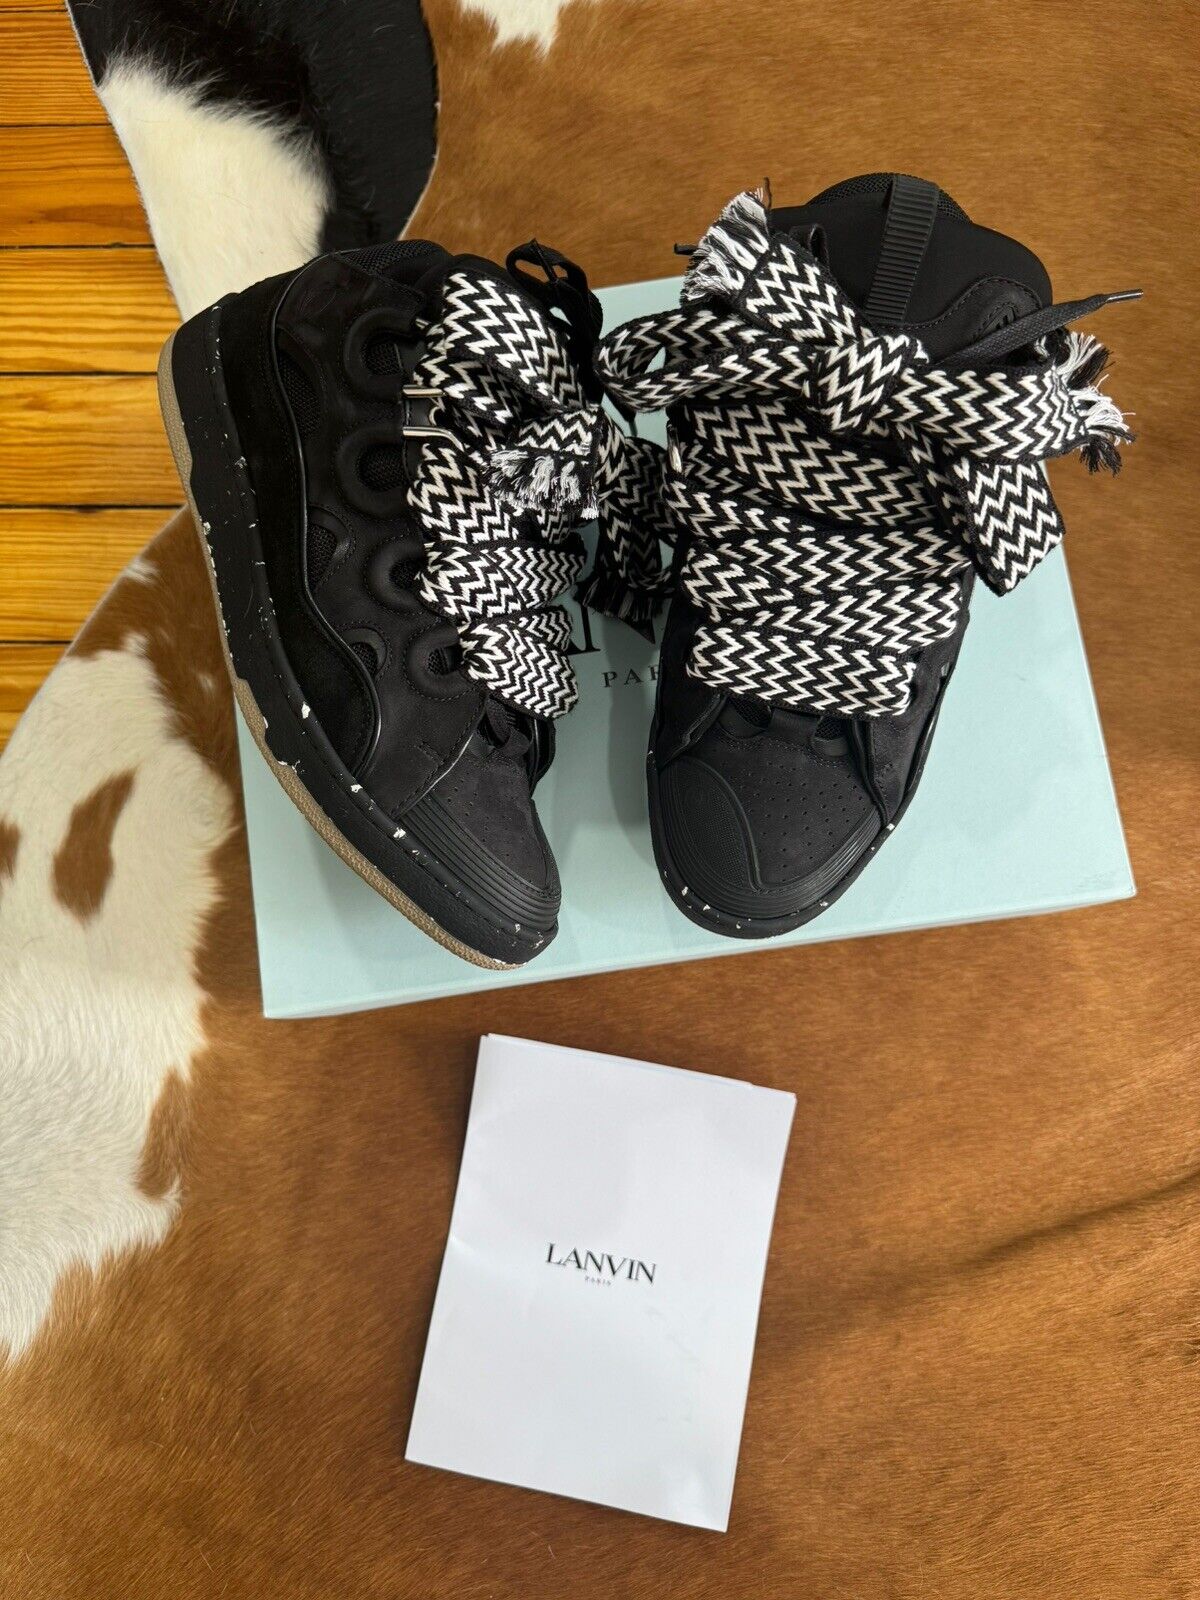 Lanvin EU 43 US 10 Leather Curb Sneakers Black OG all FM-SKRK11-DOTS-P2310